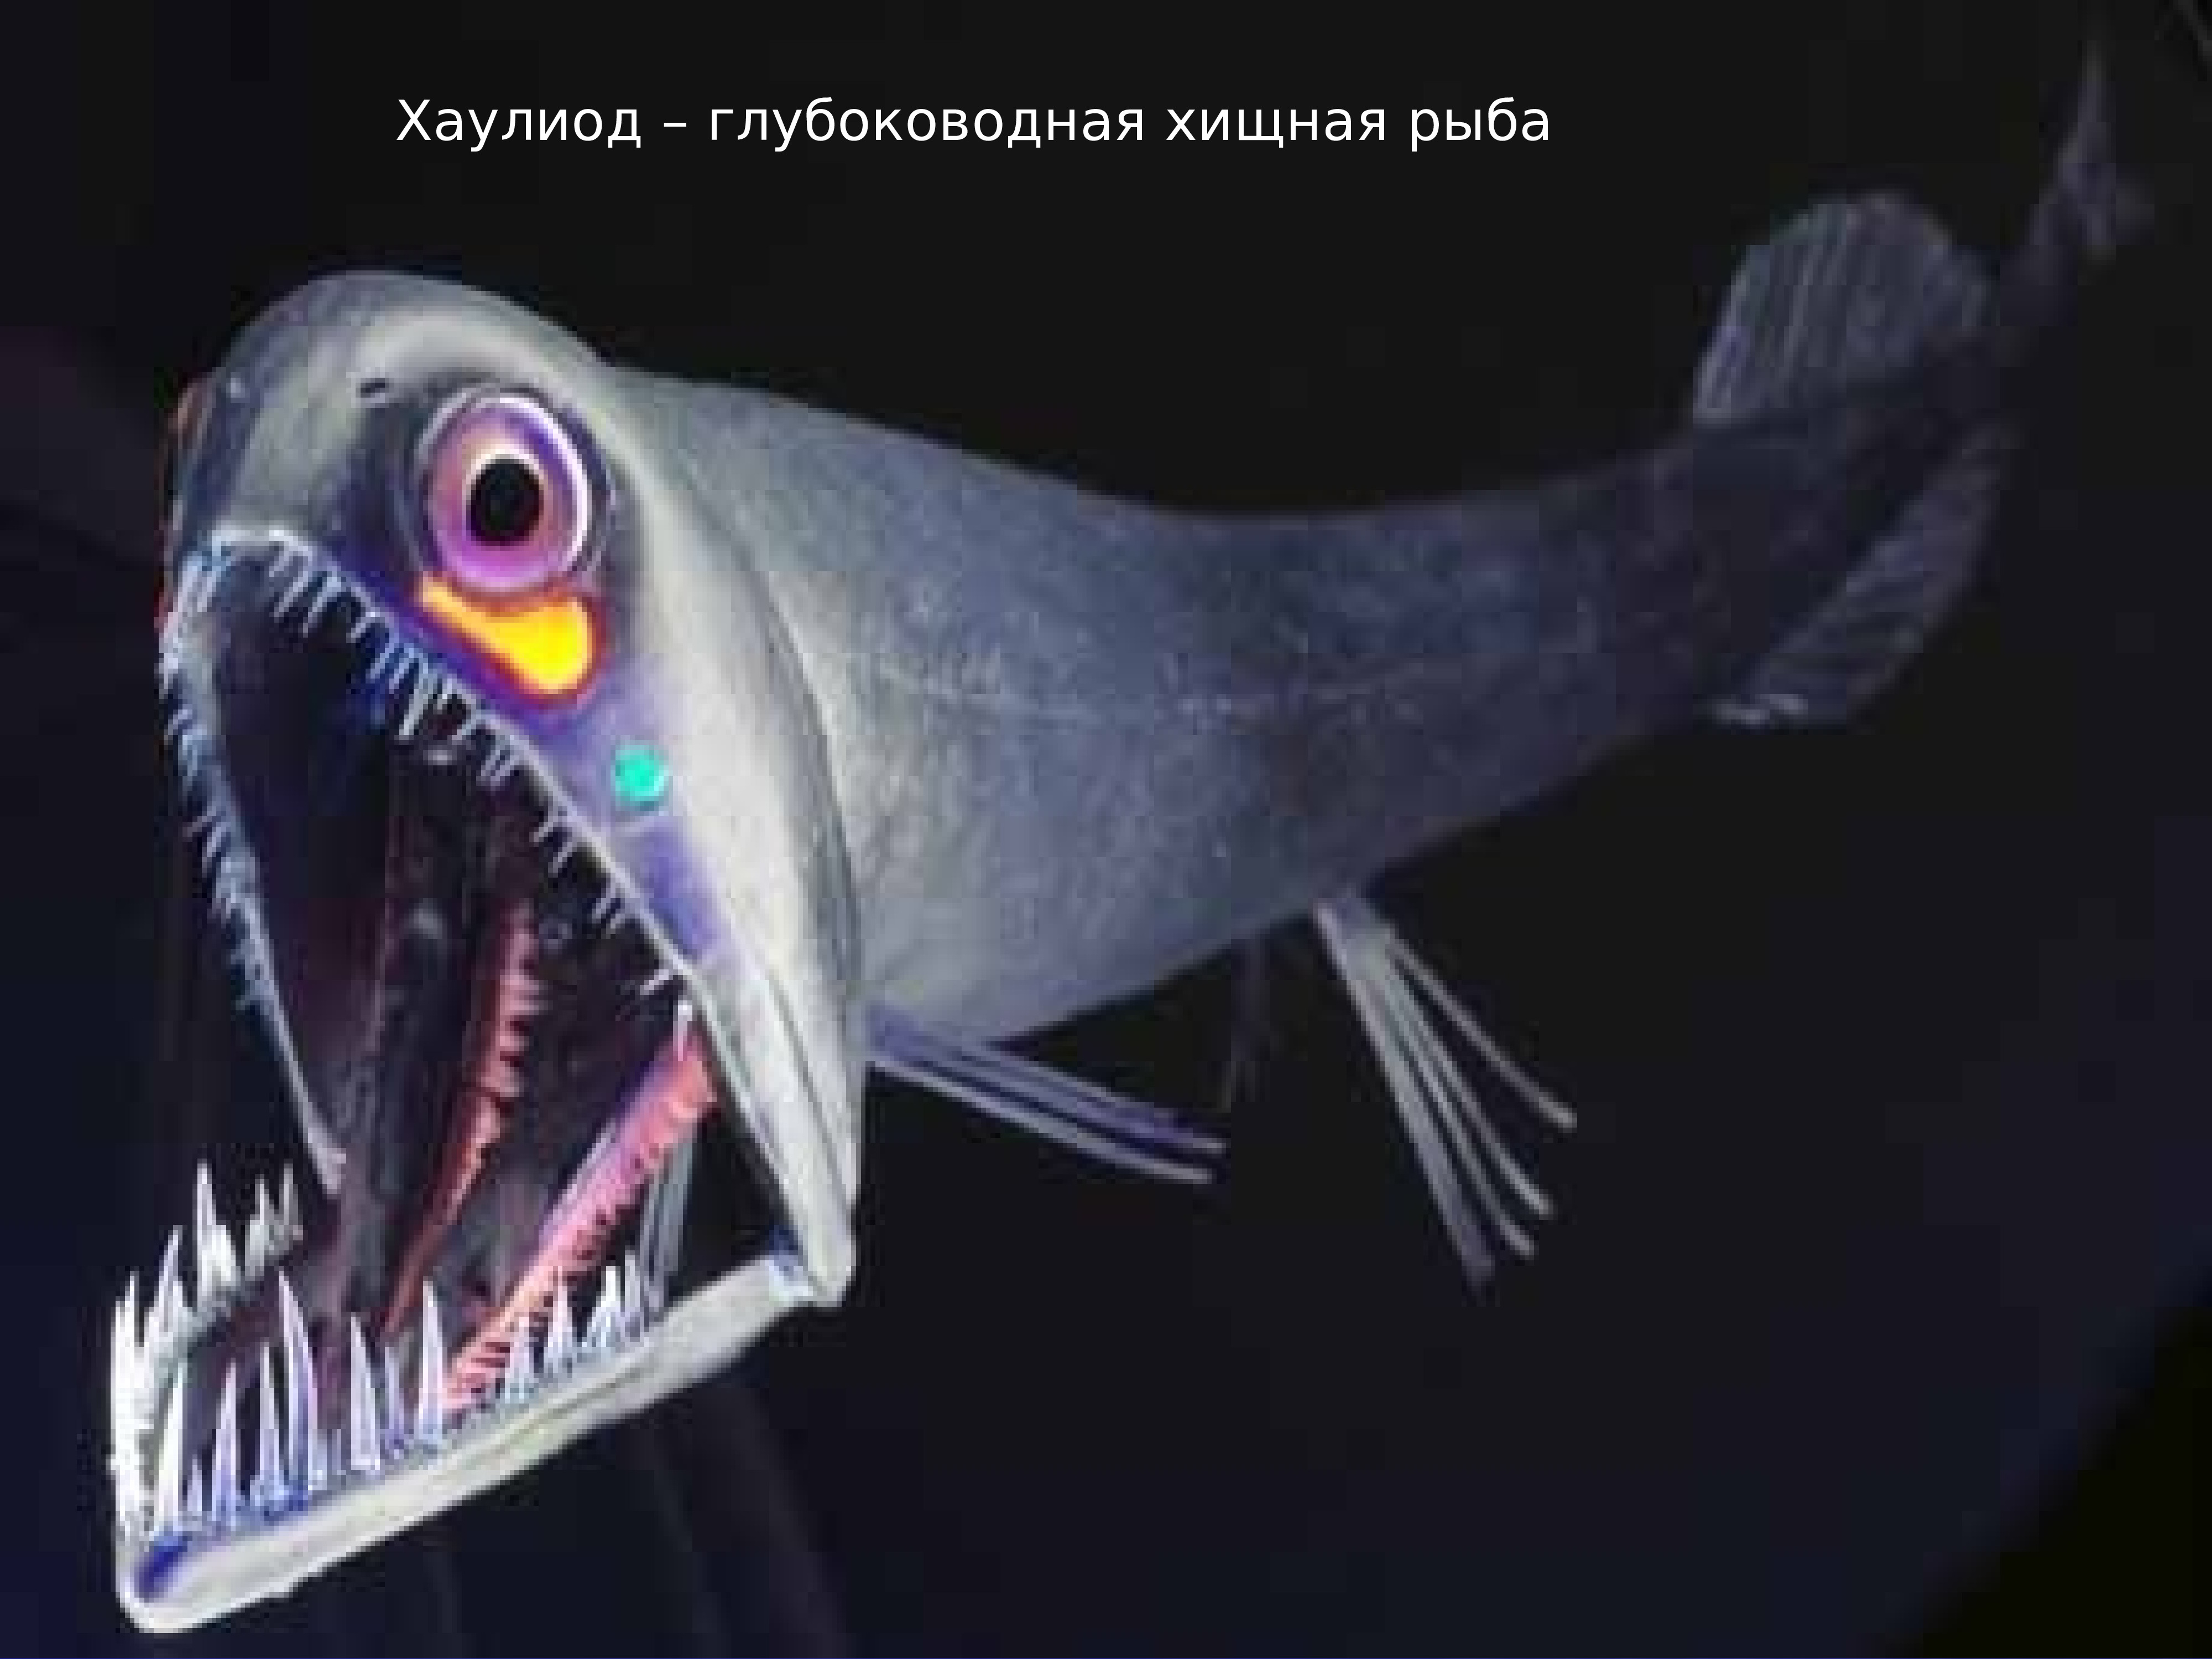 В глубоководных океанах отсутствуют. Черный малакост рыба. Чёрный малакост рыба глубоководная. Хаулиод (рыба-гадюка). Морской дракон идиакант.